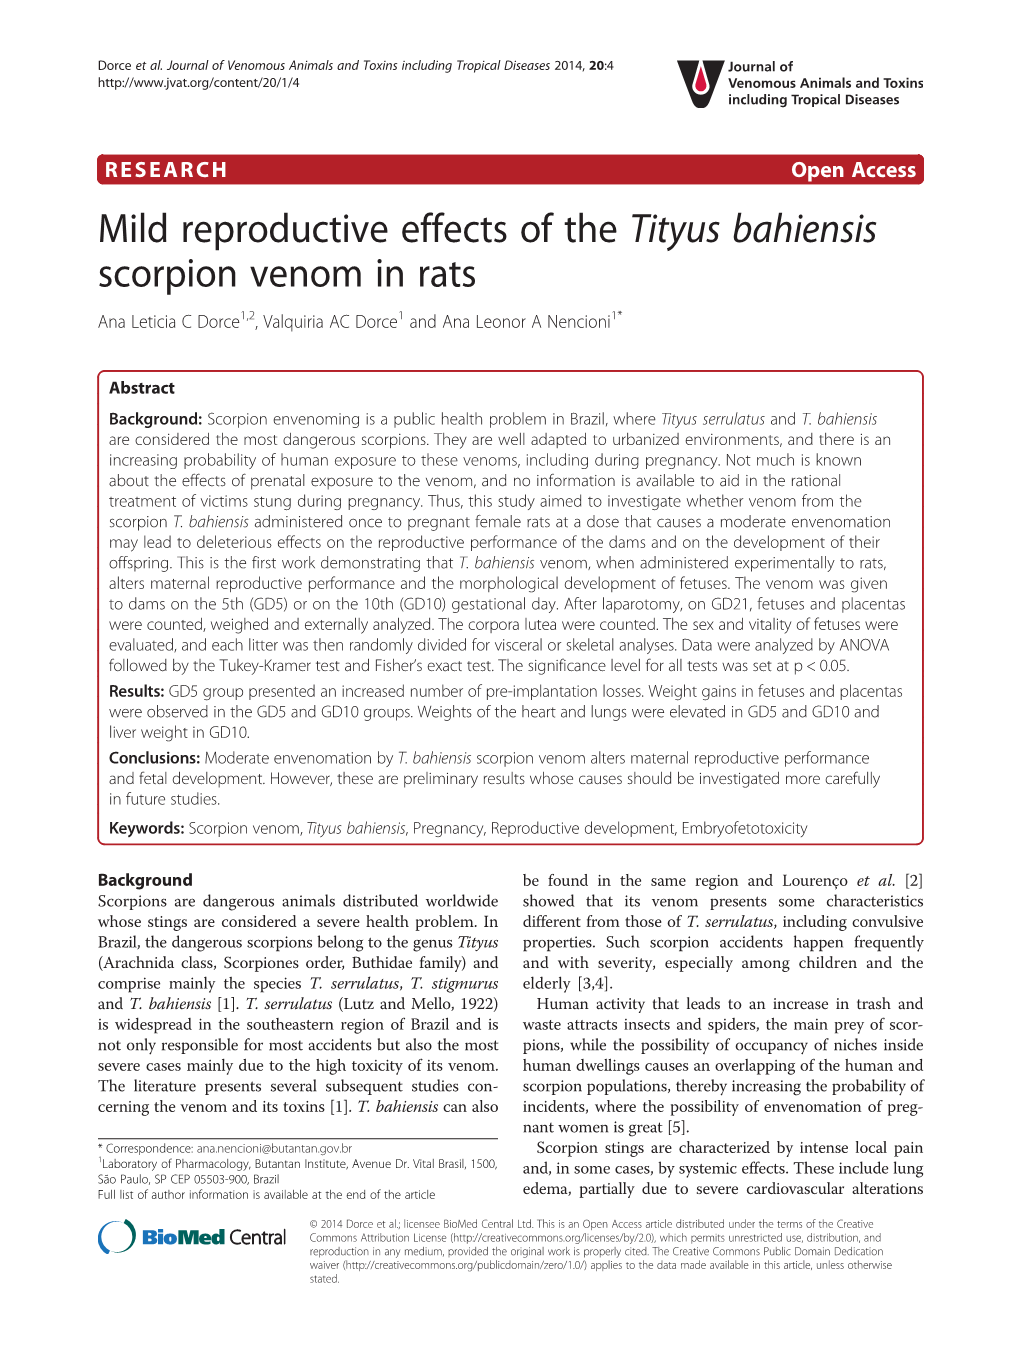 Mild Reproductive Effects of the Tityus Bahiensis Scorpion Venom in Rats Ana Leticia C Dorce1,2, Valquiria AC Dorce1 and Ana Leonor a Nencioni1*